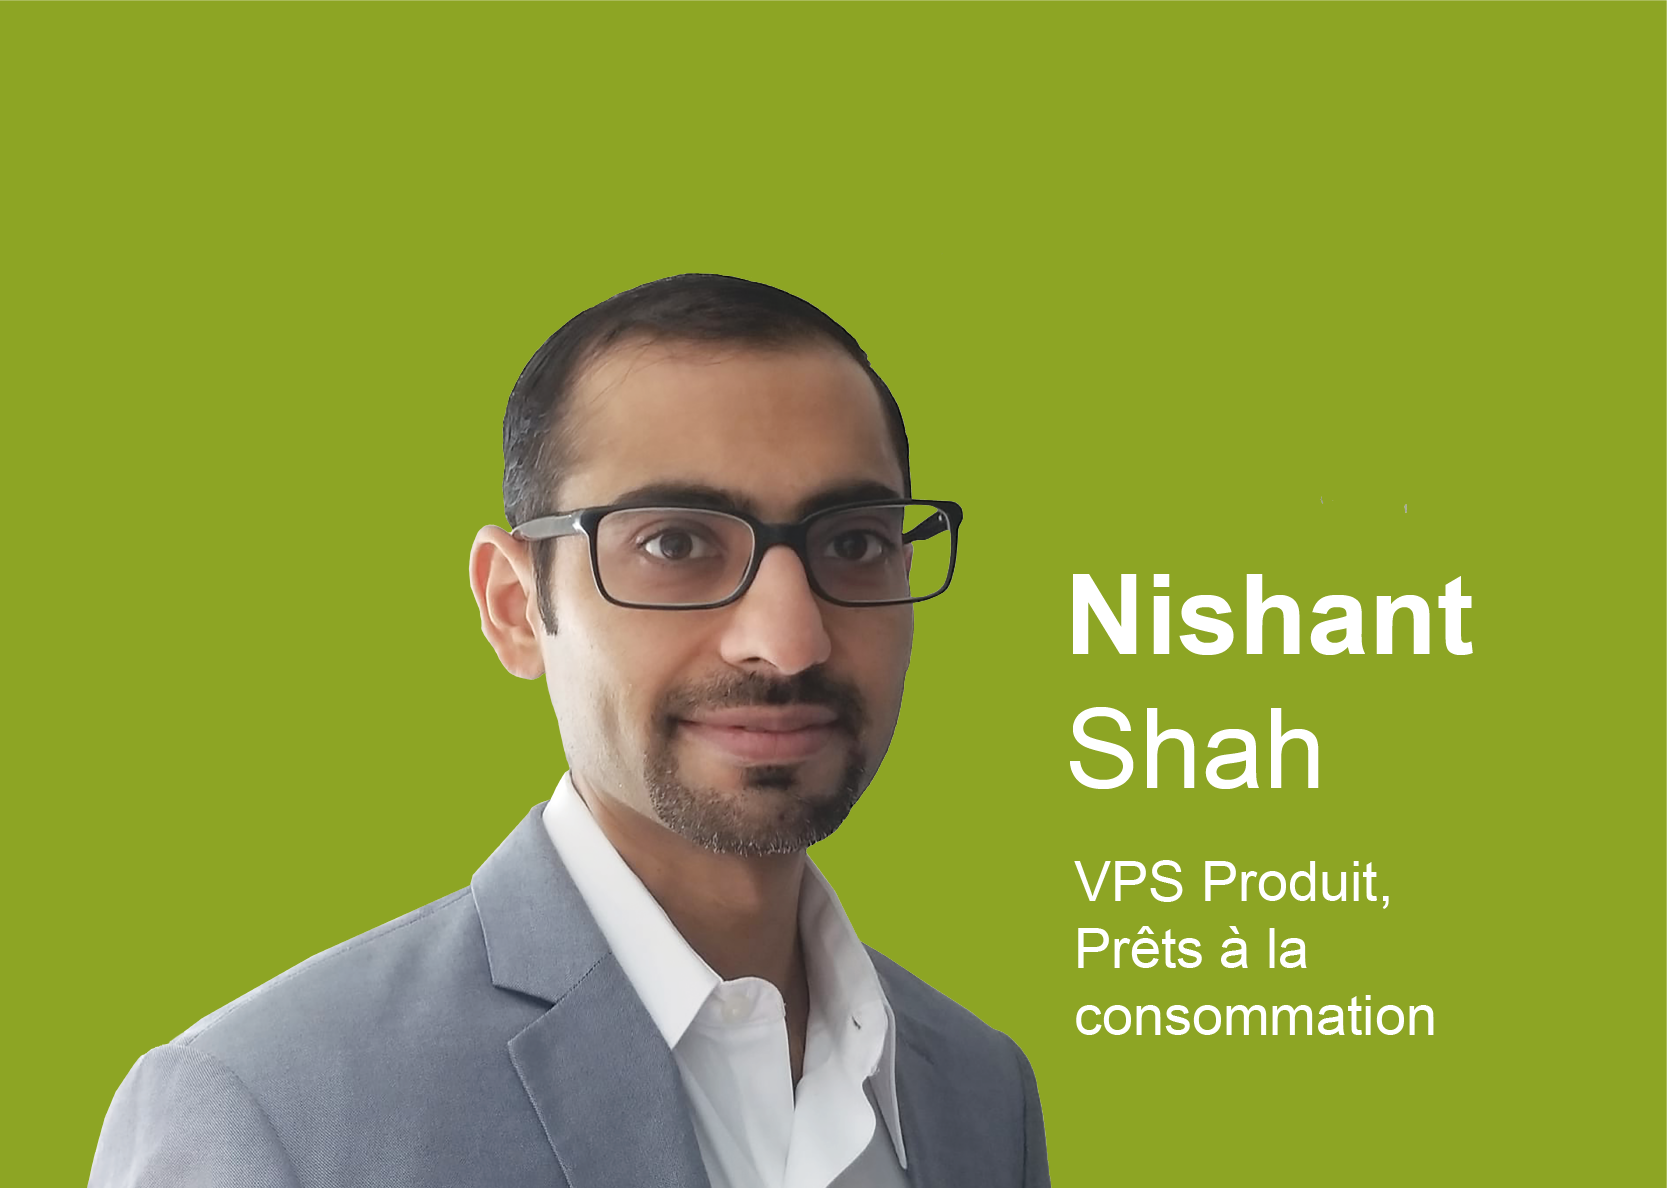 Nishant Shah - VPS Produit Prêts aux consommateurs